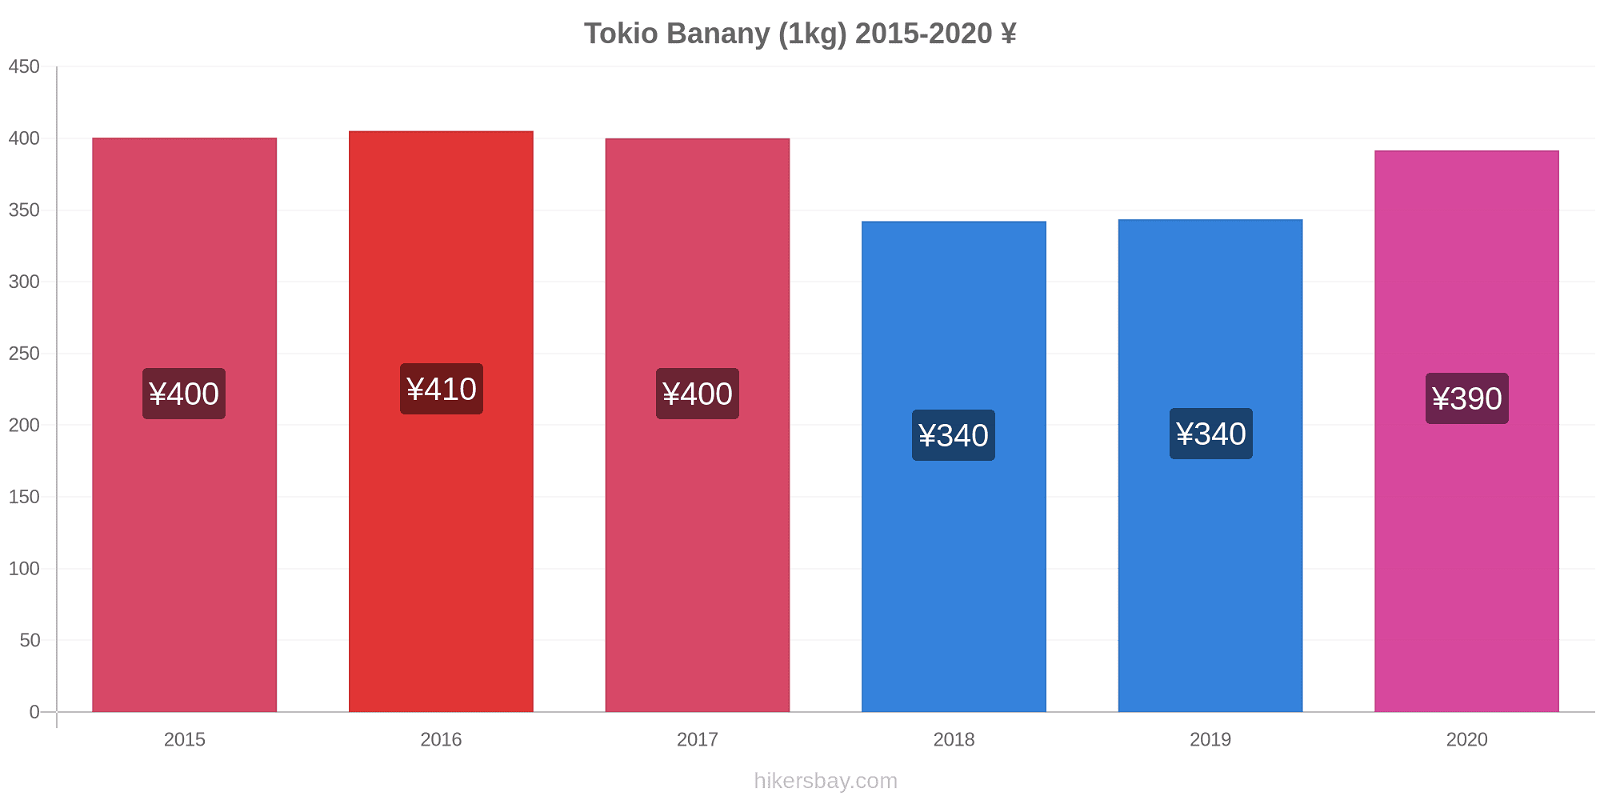 Tokio zmiany cen Banany (1kg) hikersbay.com